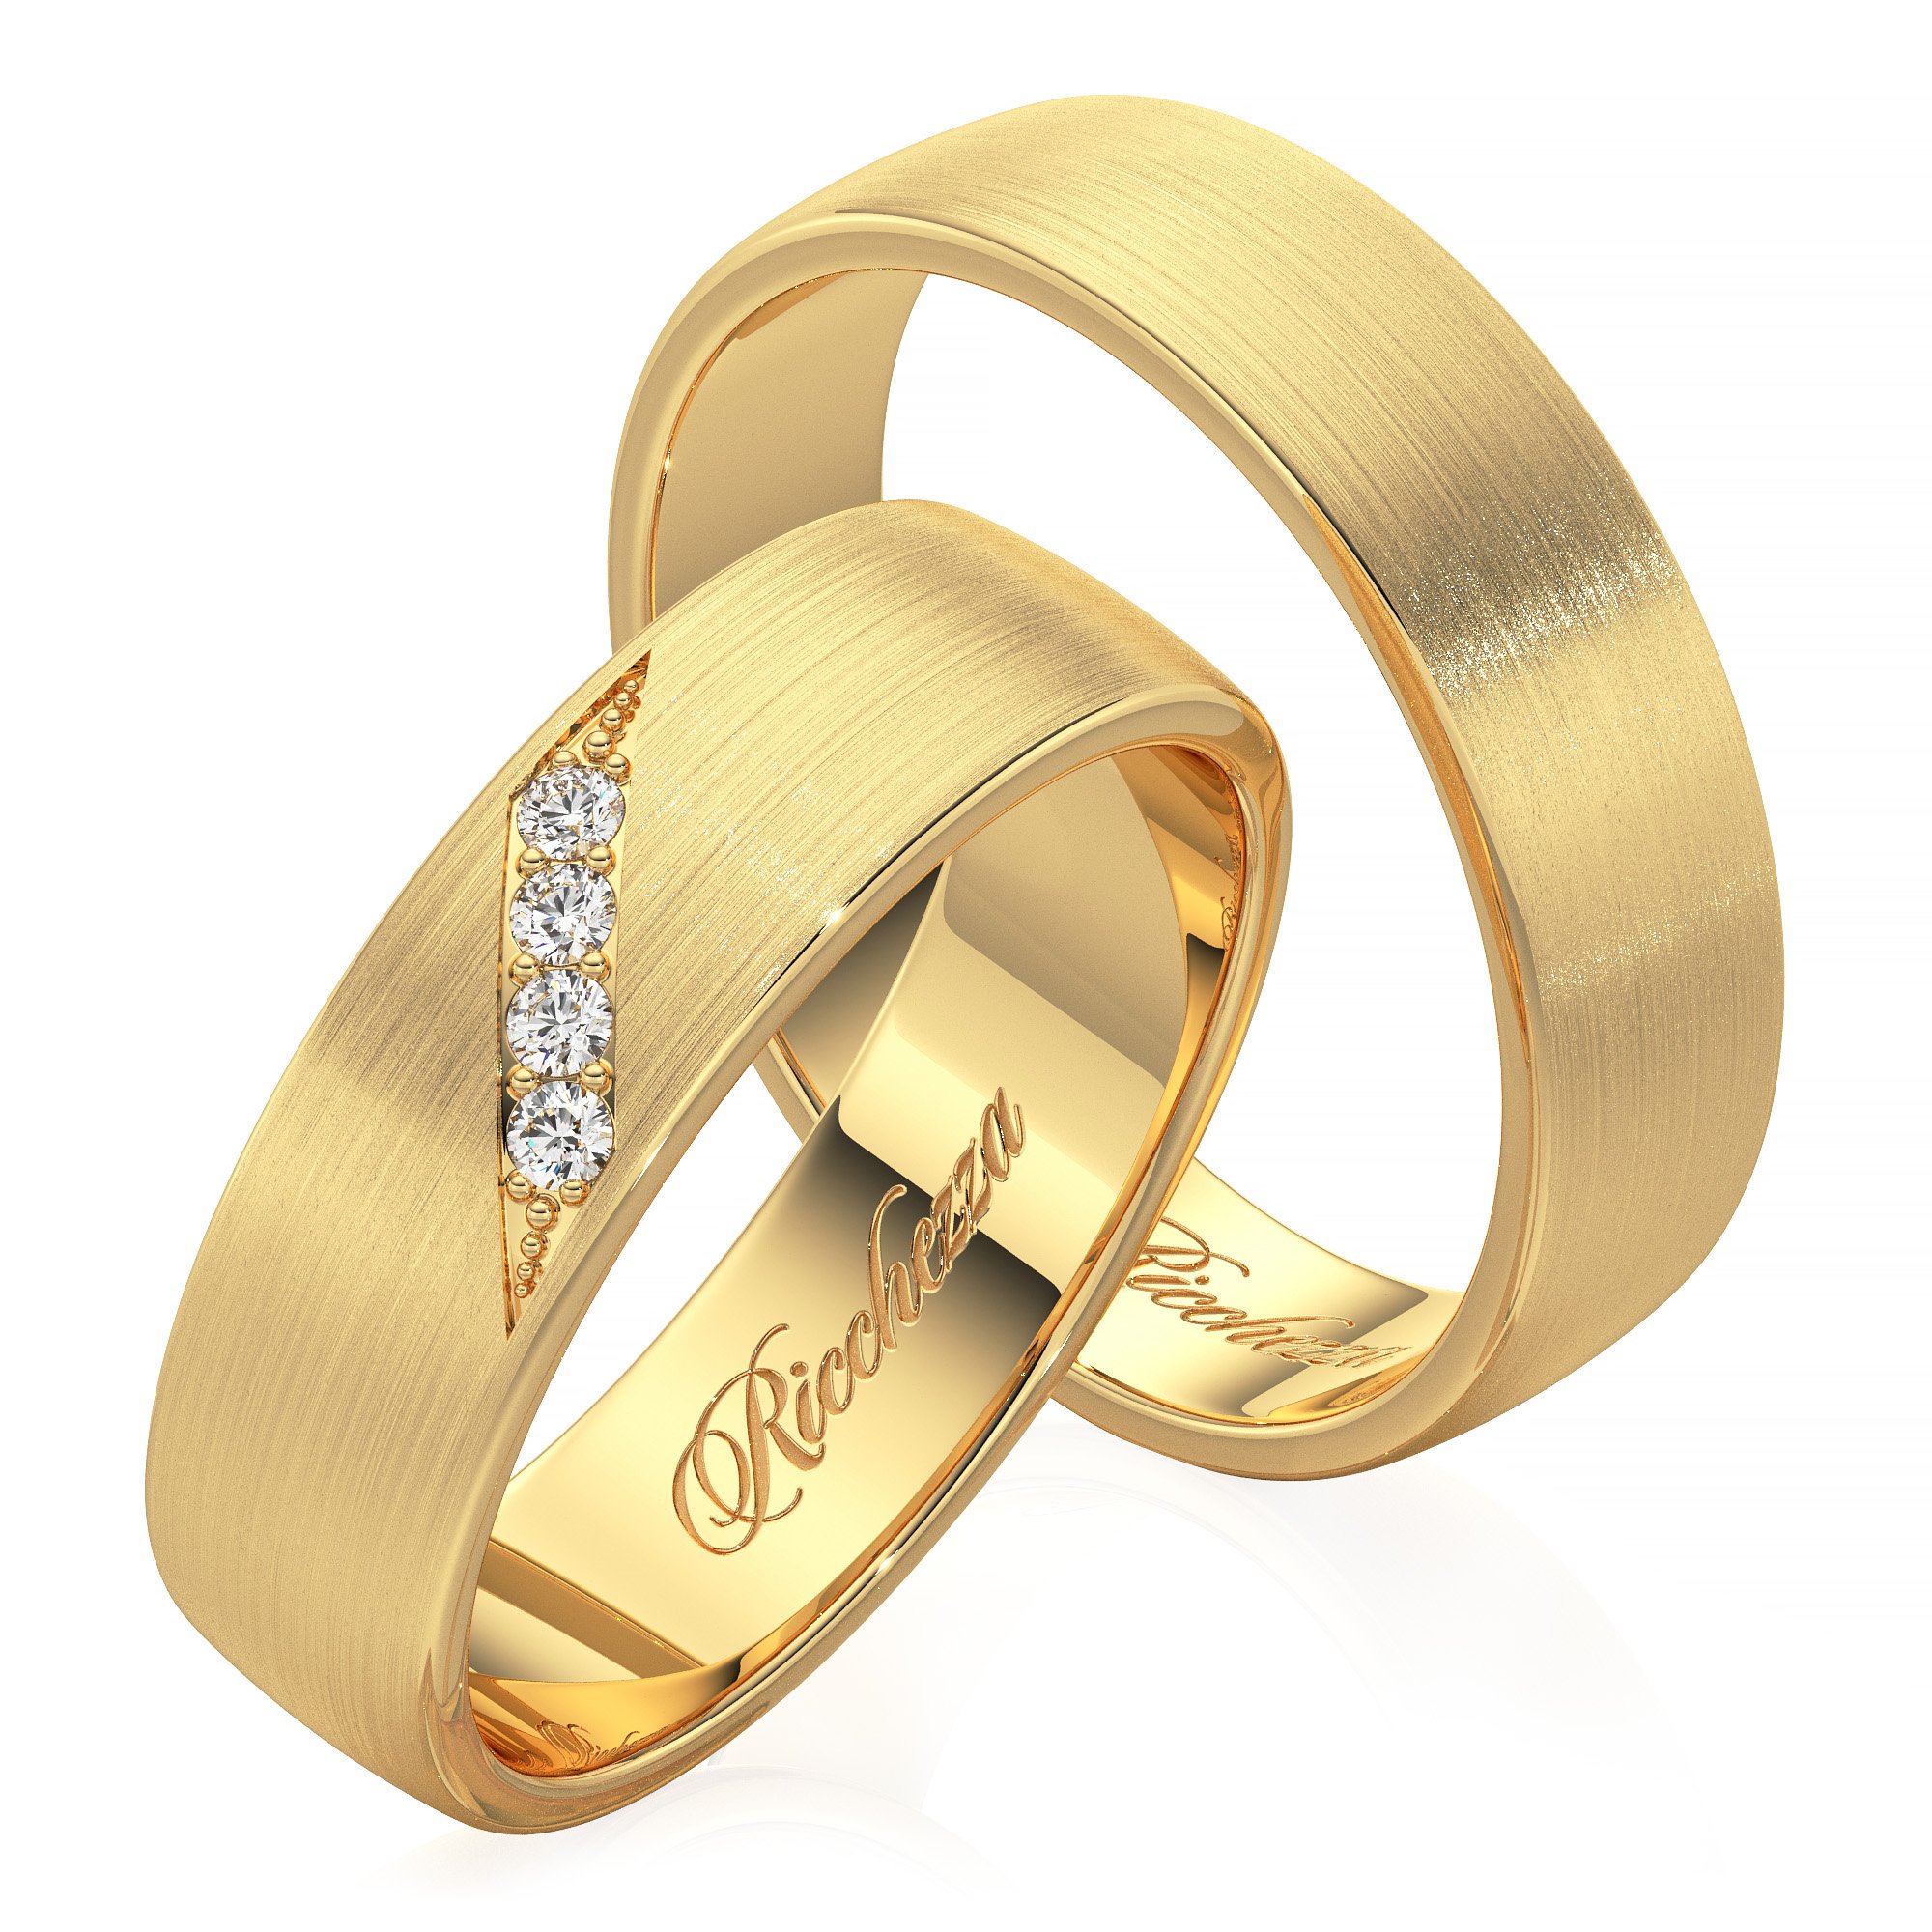 Золотые кольцо обручальное женские цена. Кольца обручальные парные золотые Адамас. Обручальные кольца 585. Обручальные кольца парные 585. Золотые кольца обручалки 585 пробы.